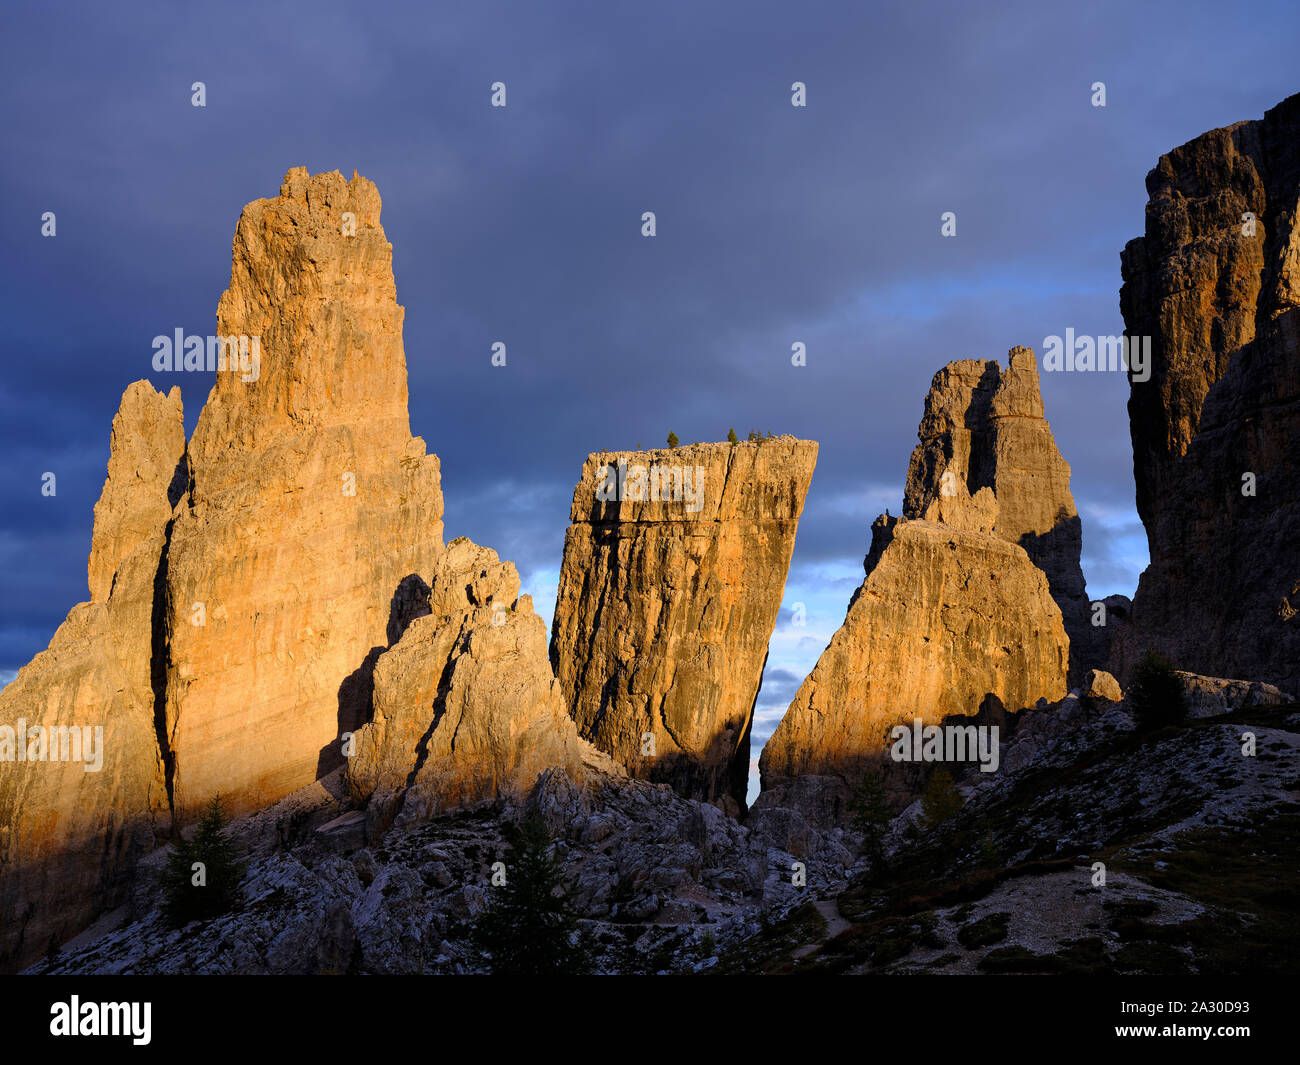 Formazioni rocciose grigio chiaro delle cinque Torri che si illuminano di rosso su uno sfondo di nuvole scure al tramonto. Cortina d'Ampezzo, Dolomiti, Veneto, Italia. Foto Stock